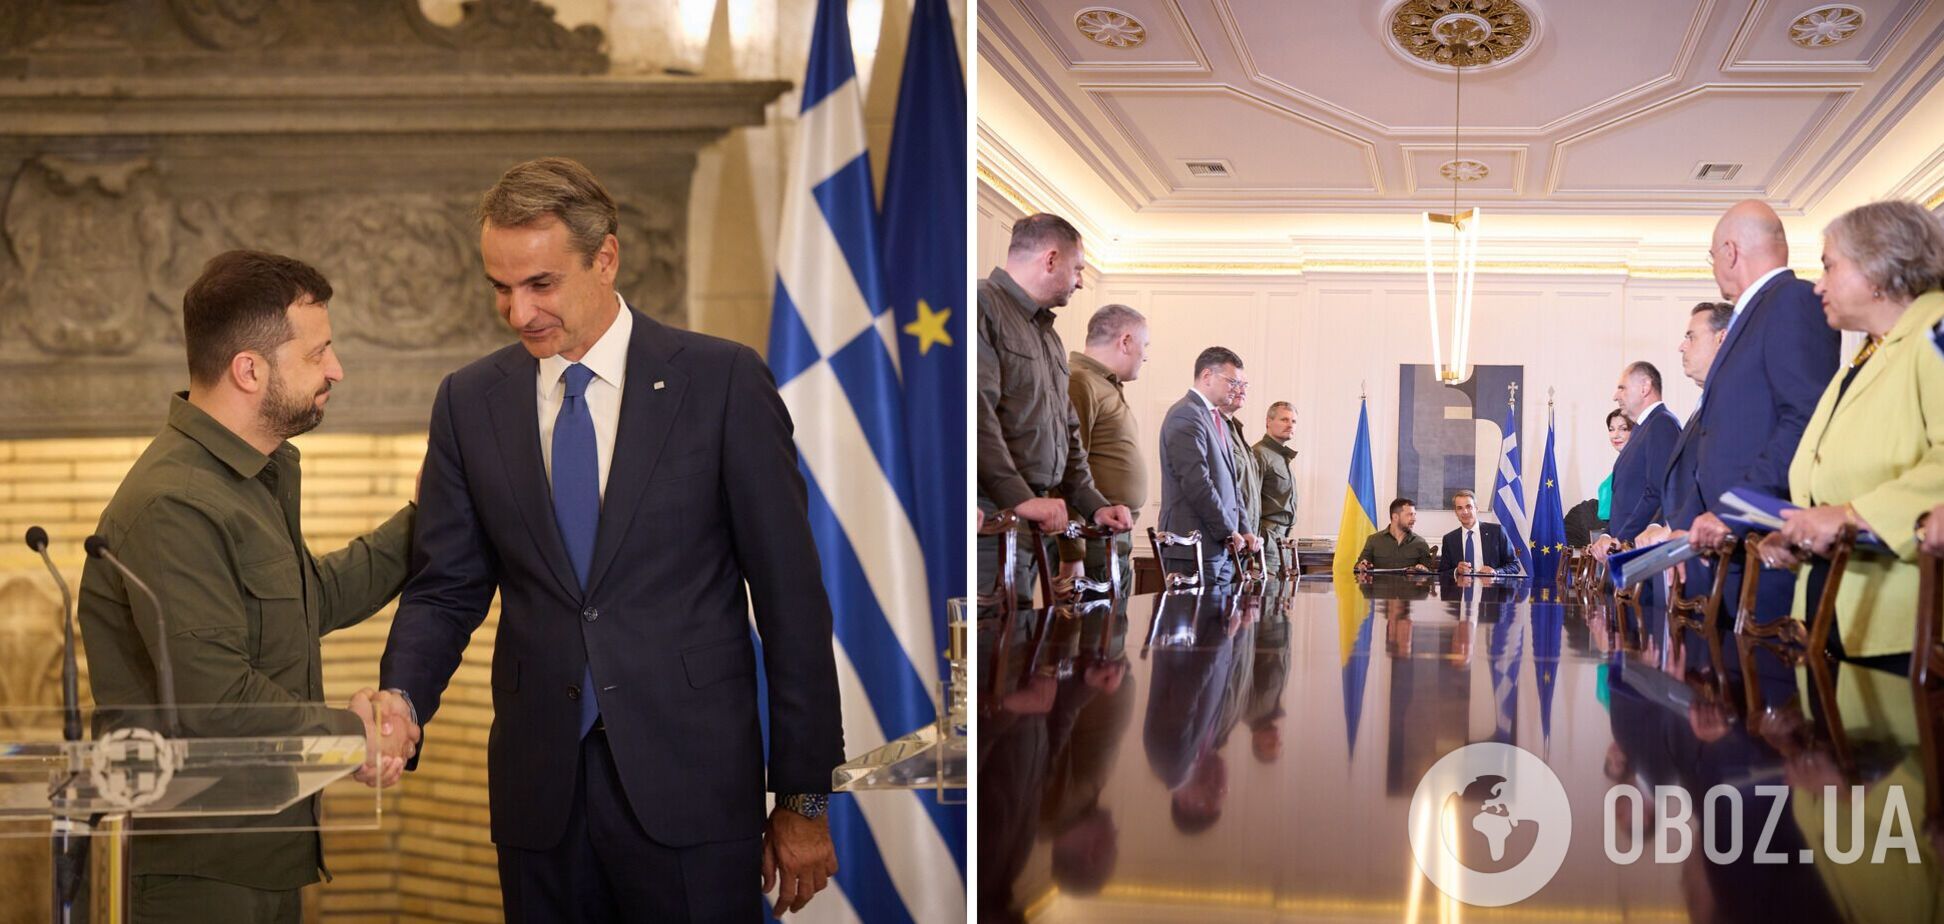 Греция присоединилась к декларации G7 о гарантиях безопасности для Украины: Зеленский рассказал подробности